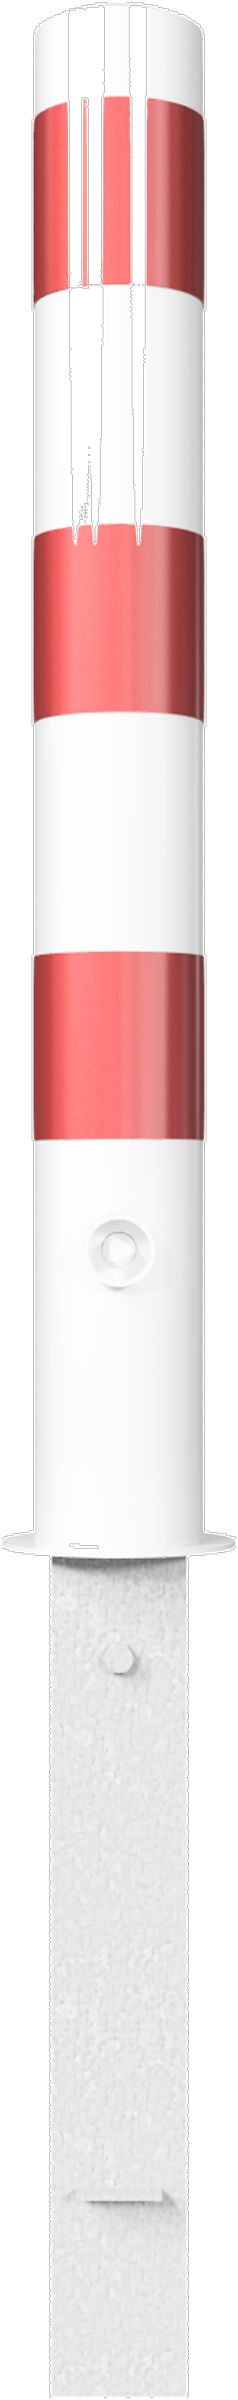 Schake Absperrpfosten HD Ø 102 mm weiß | rot